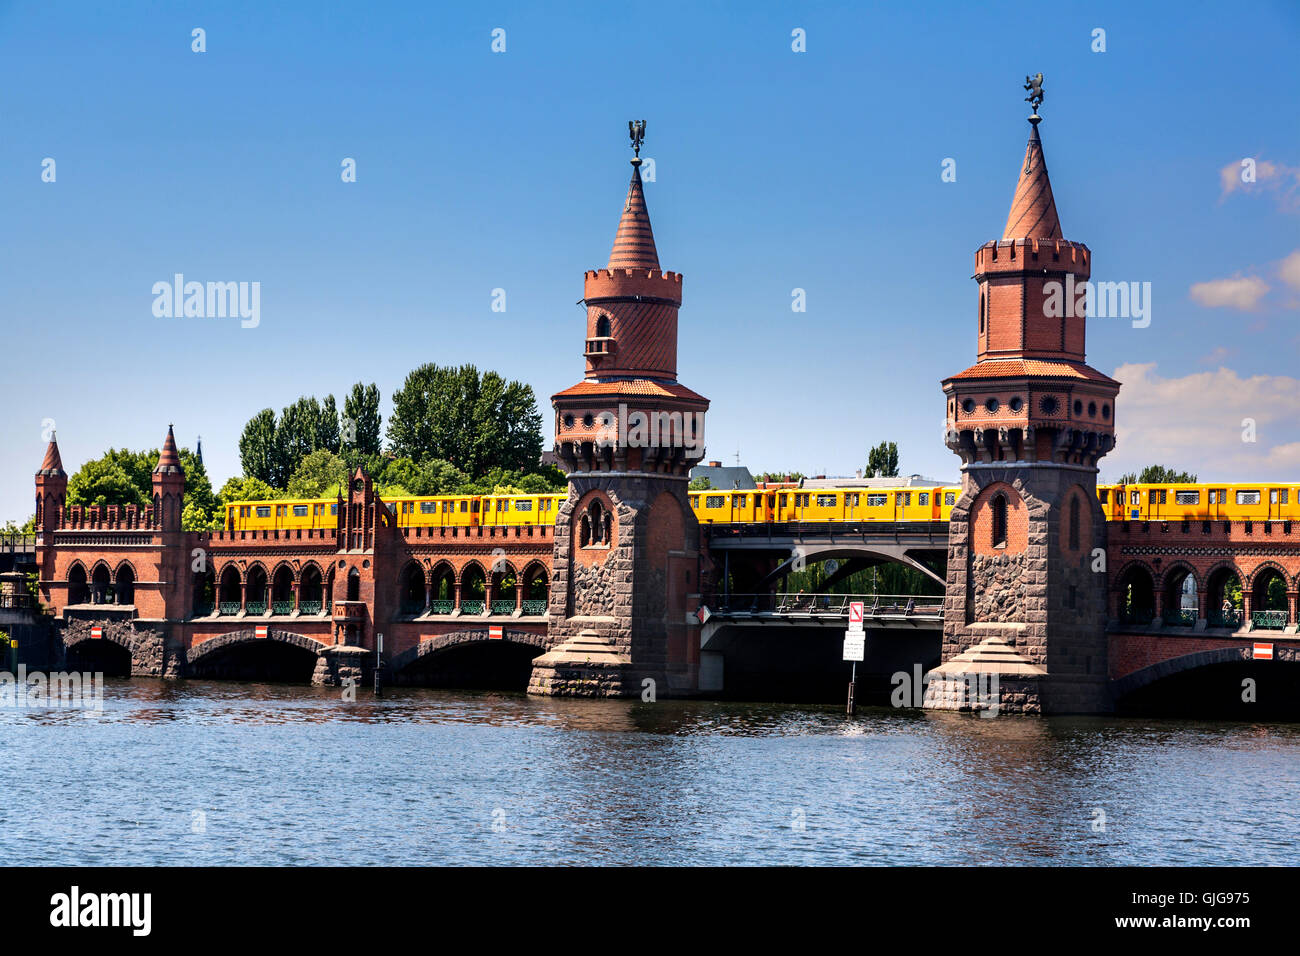 Die Oberbaum-Brücke über den Fluss Spree, Friedrichshain, Berlin, Deutschland. Stockfoto